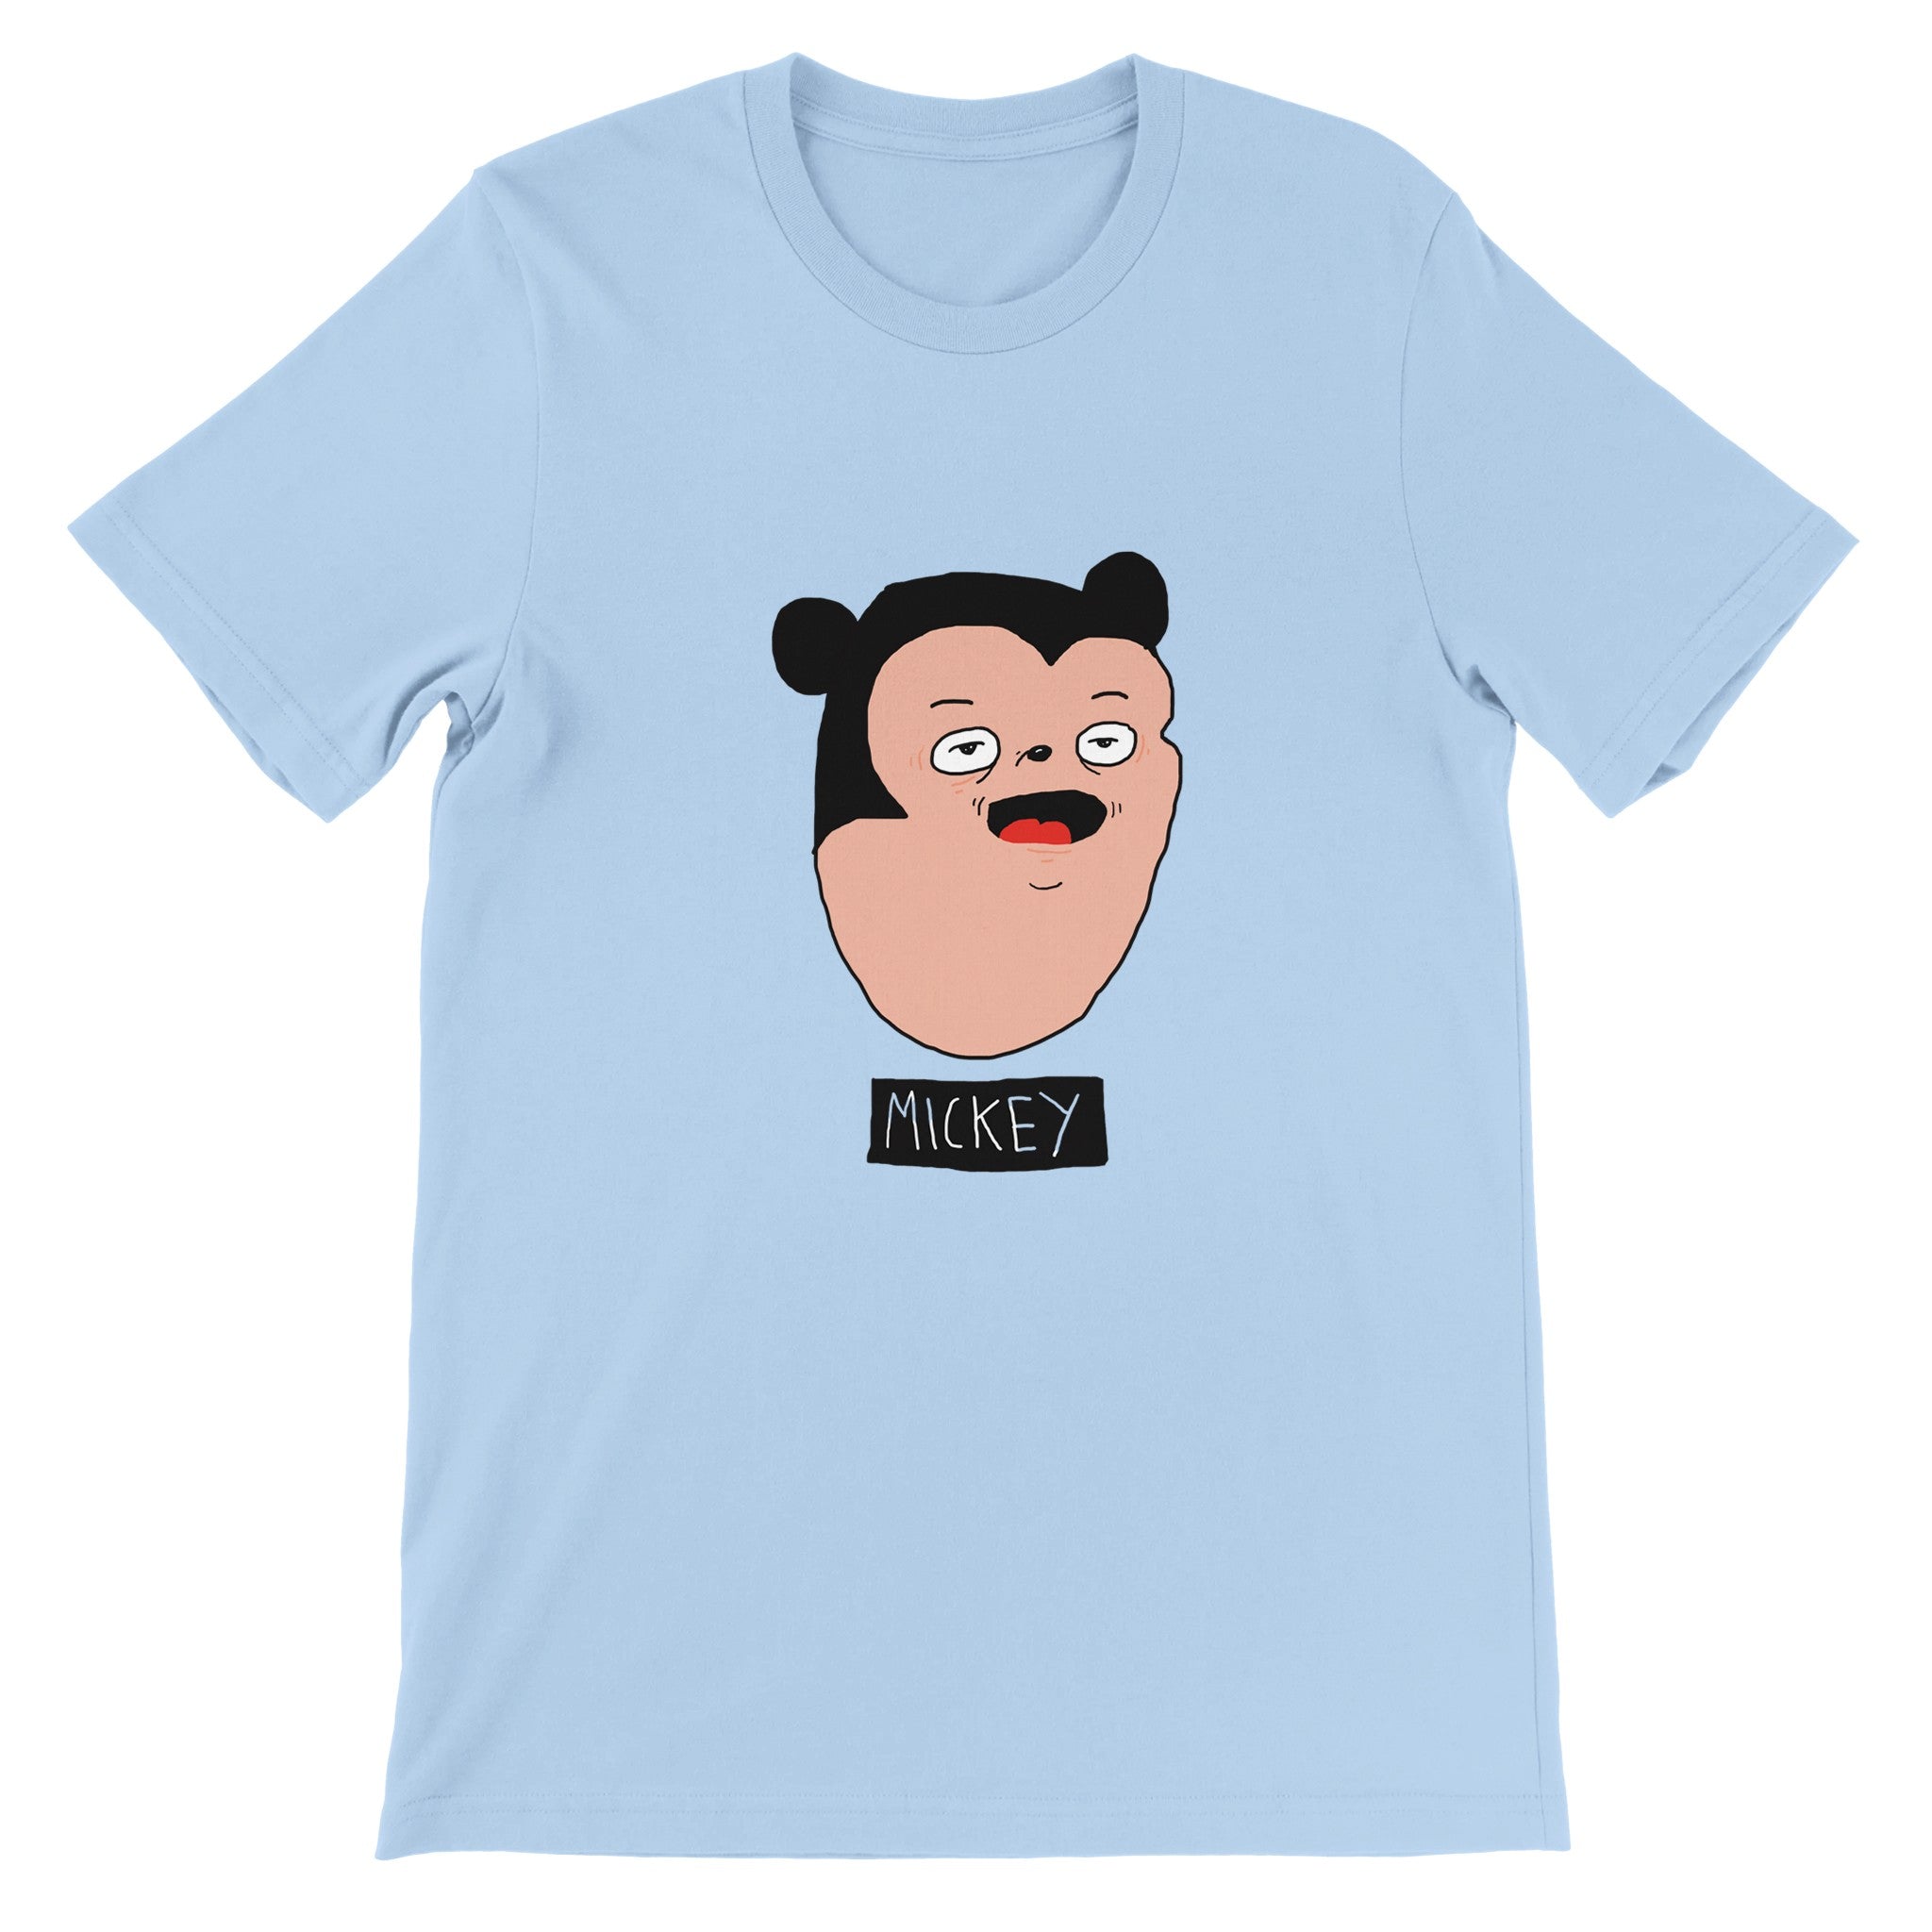 Mickey Crewneck T-shirt - Optimalprint